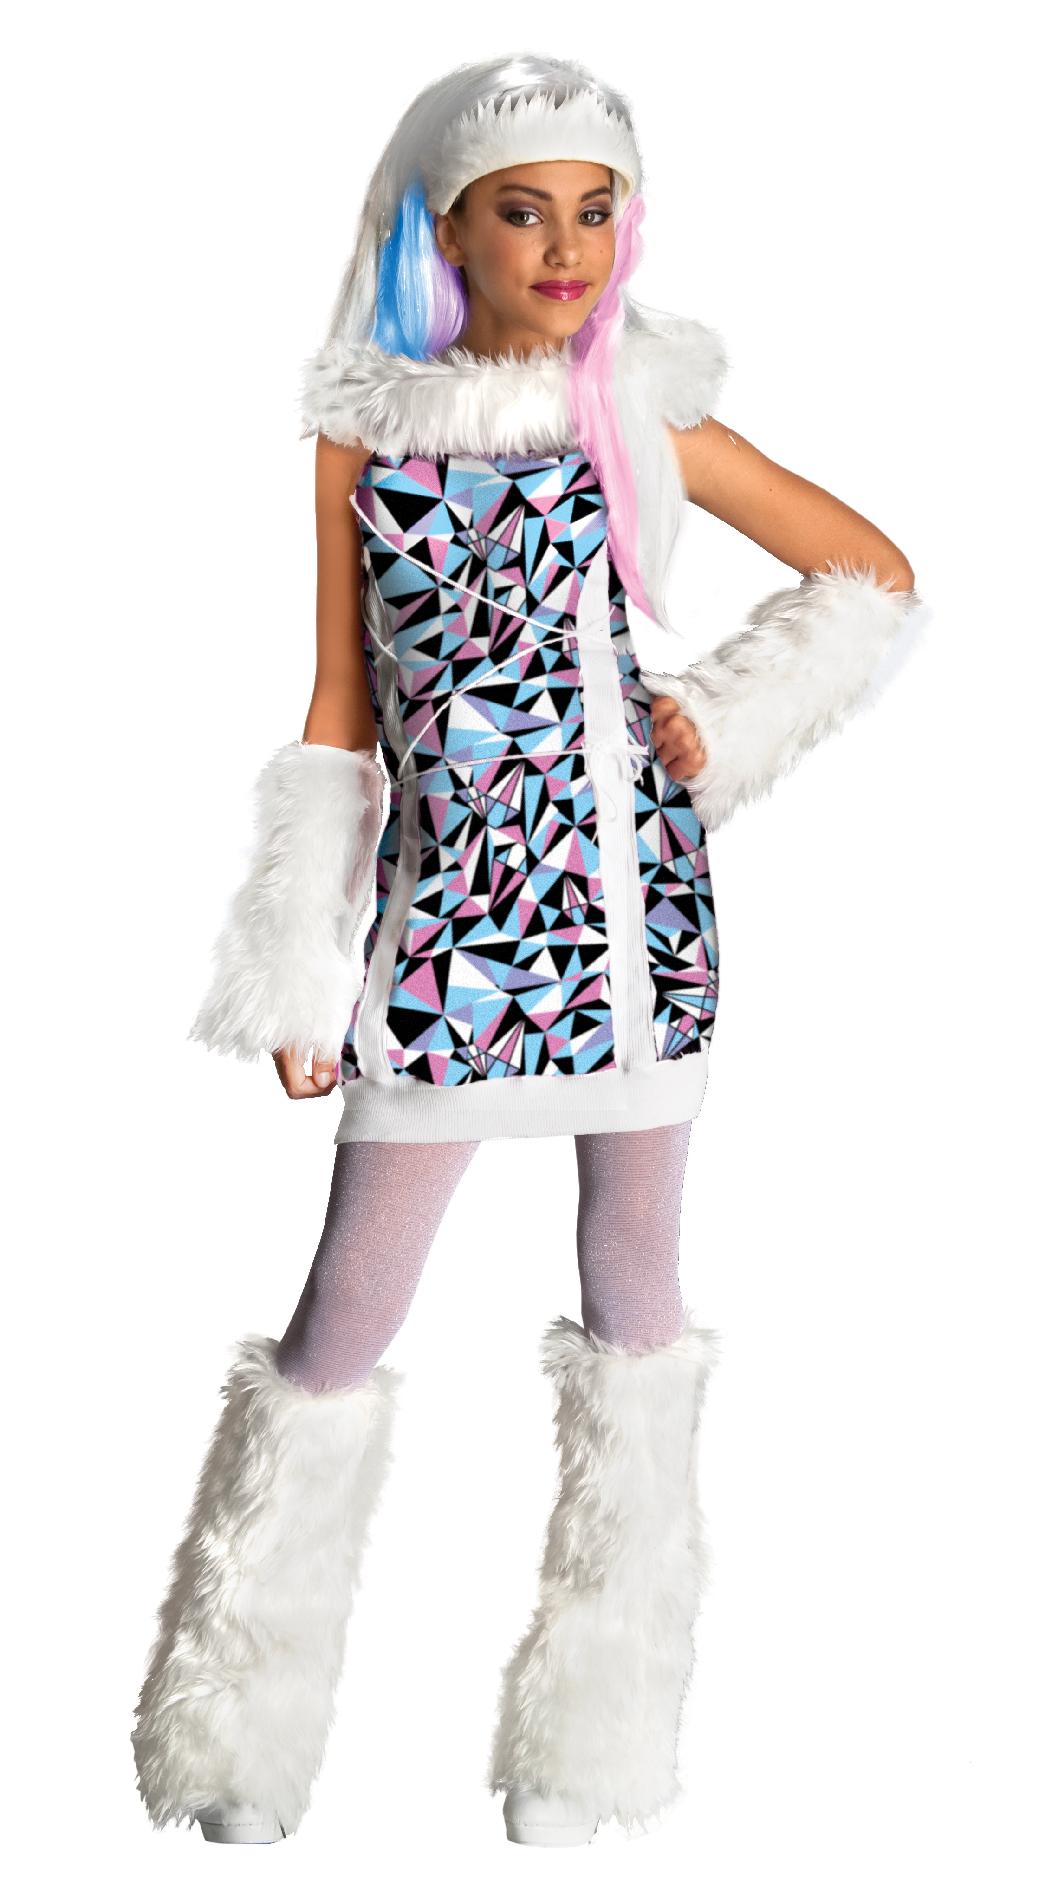 Abbey Bominable Girls' Halloween Costume